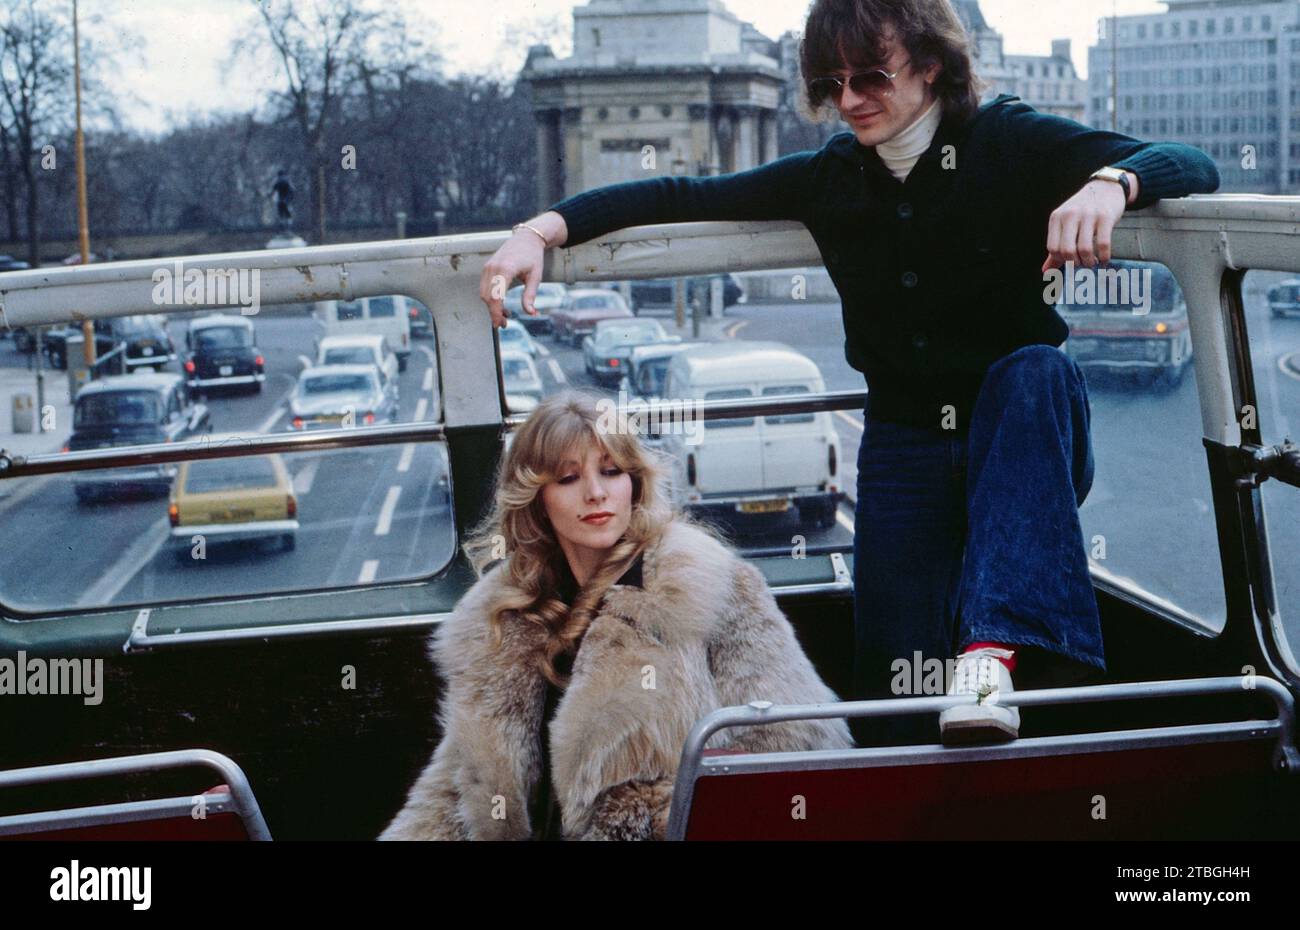 Lynsey de Paul, britische Sängerin und Liedermacherin, mit dem britischen Musiker Mike Moran, circa 1977. Lynsey de Paul, cantautrice britannico, con il musicista britannico Mike Moran, circa 1977 Foto Stock